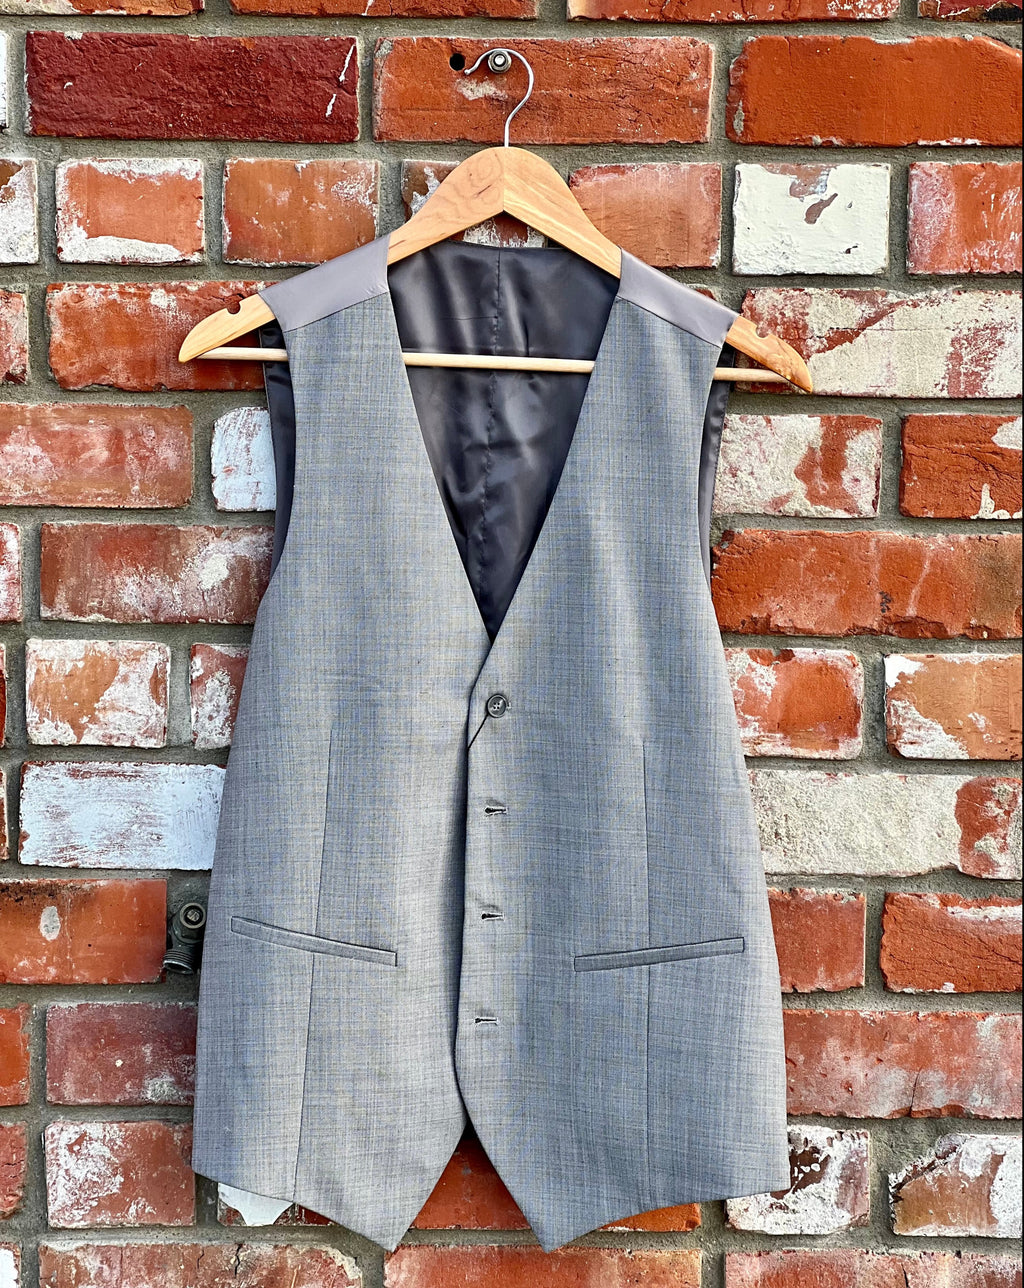 Stylish wool-mix waistcoat by Savile Row